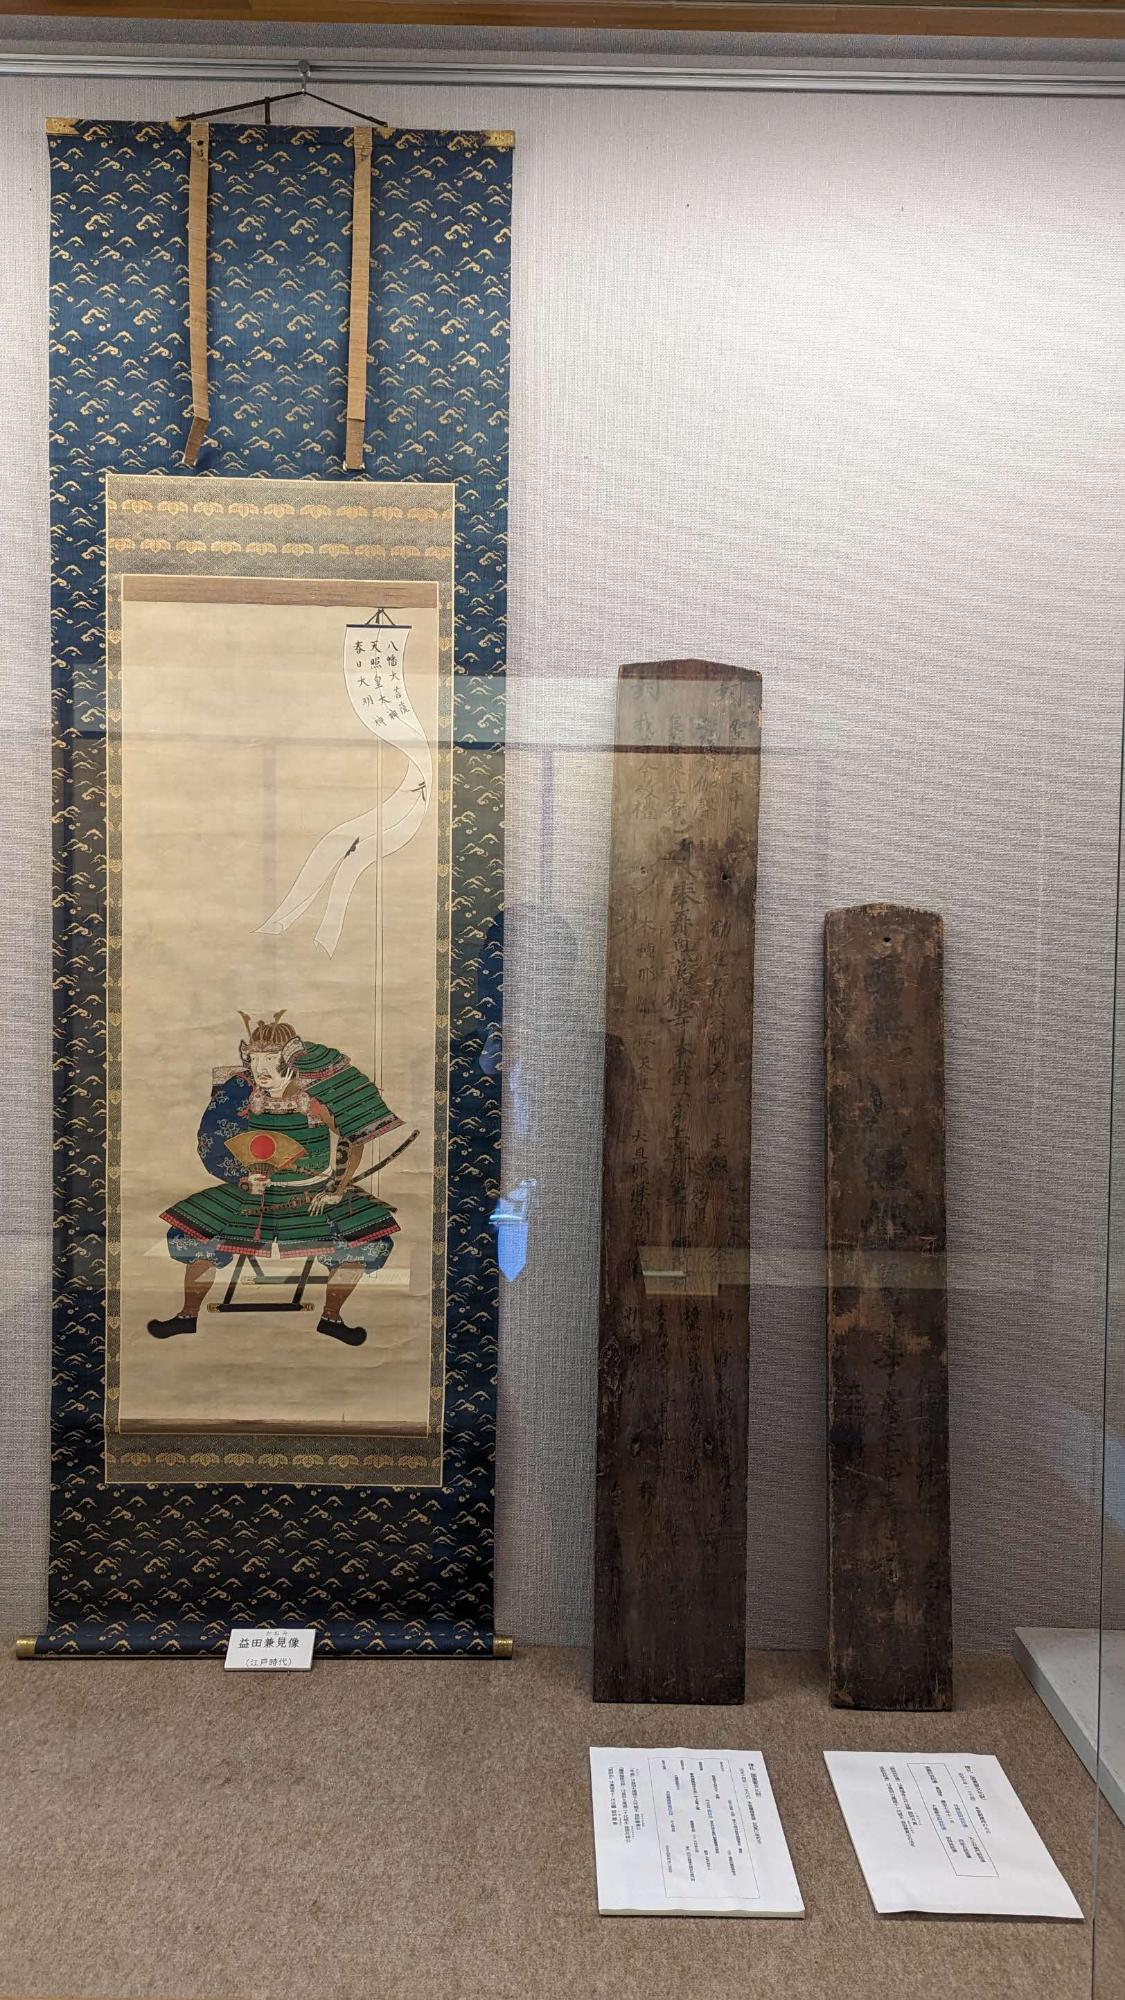 萬福寺での重要文化財「万福寺本堂附棟札7枚」のうち2枚の展示